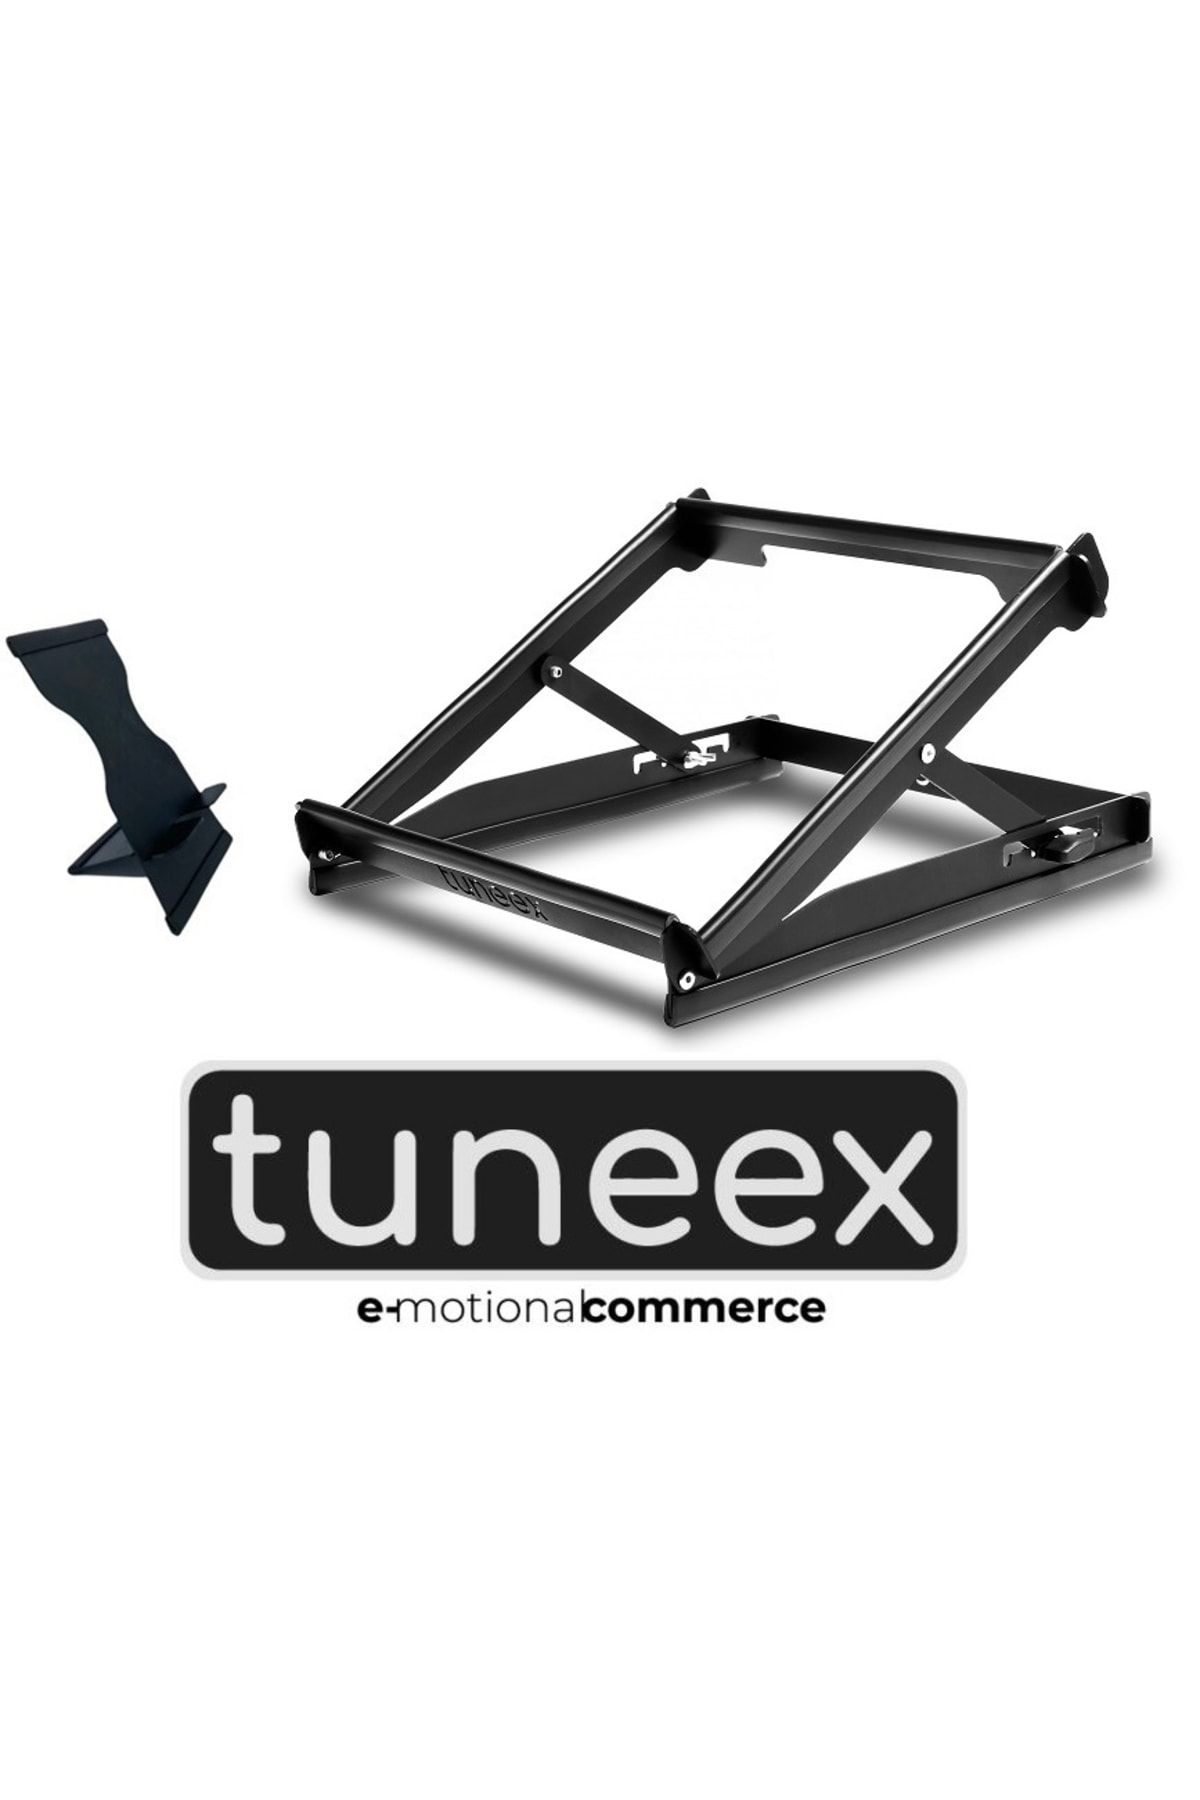 tuneex 2'li Set - 5 Kademeli Çelik Notebook Laptop Yükseltici Altlık & Telefon Tablet Tutucu Stand - 2 Ürün